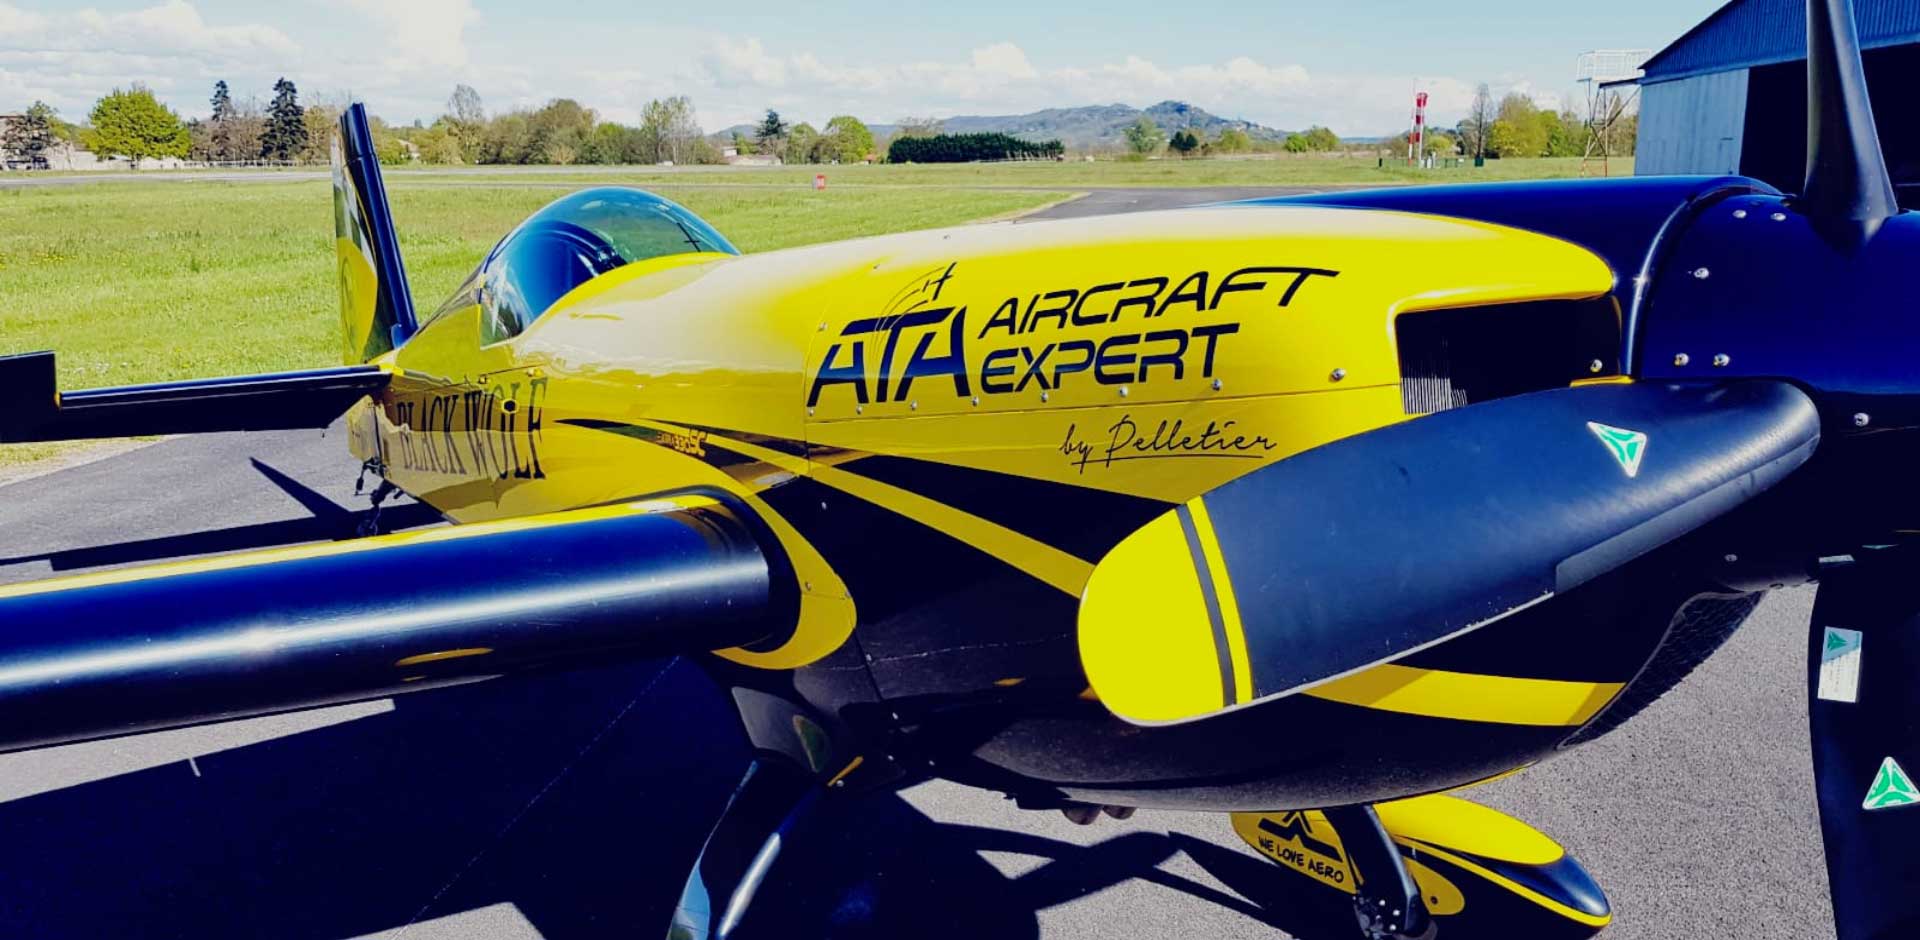 Le Champion du Monde de Voltige Aérienne 2019 sur un avion sponsorisé par ATA !